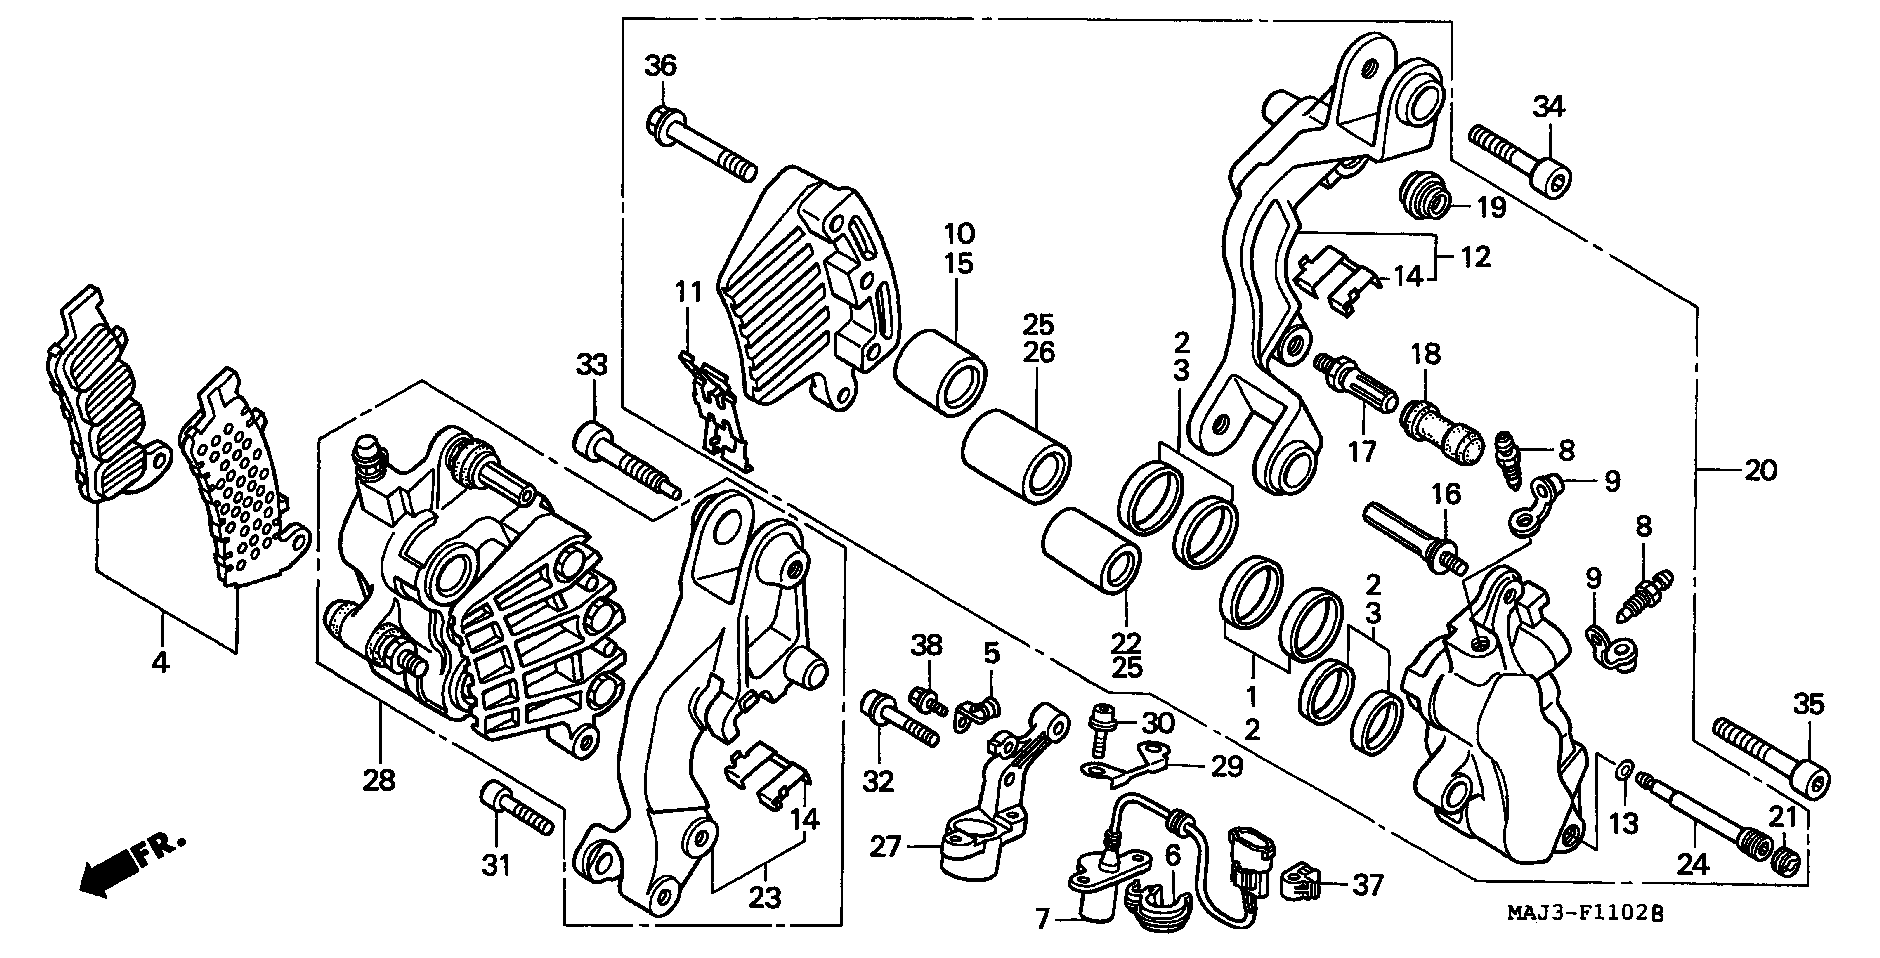 Parts fiche Brake Caliper Front ST1100